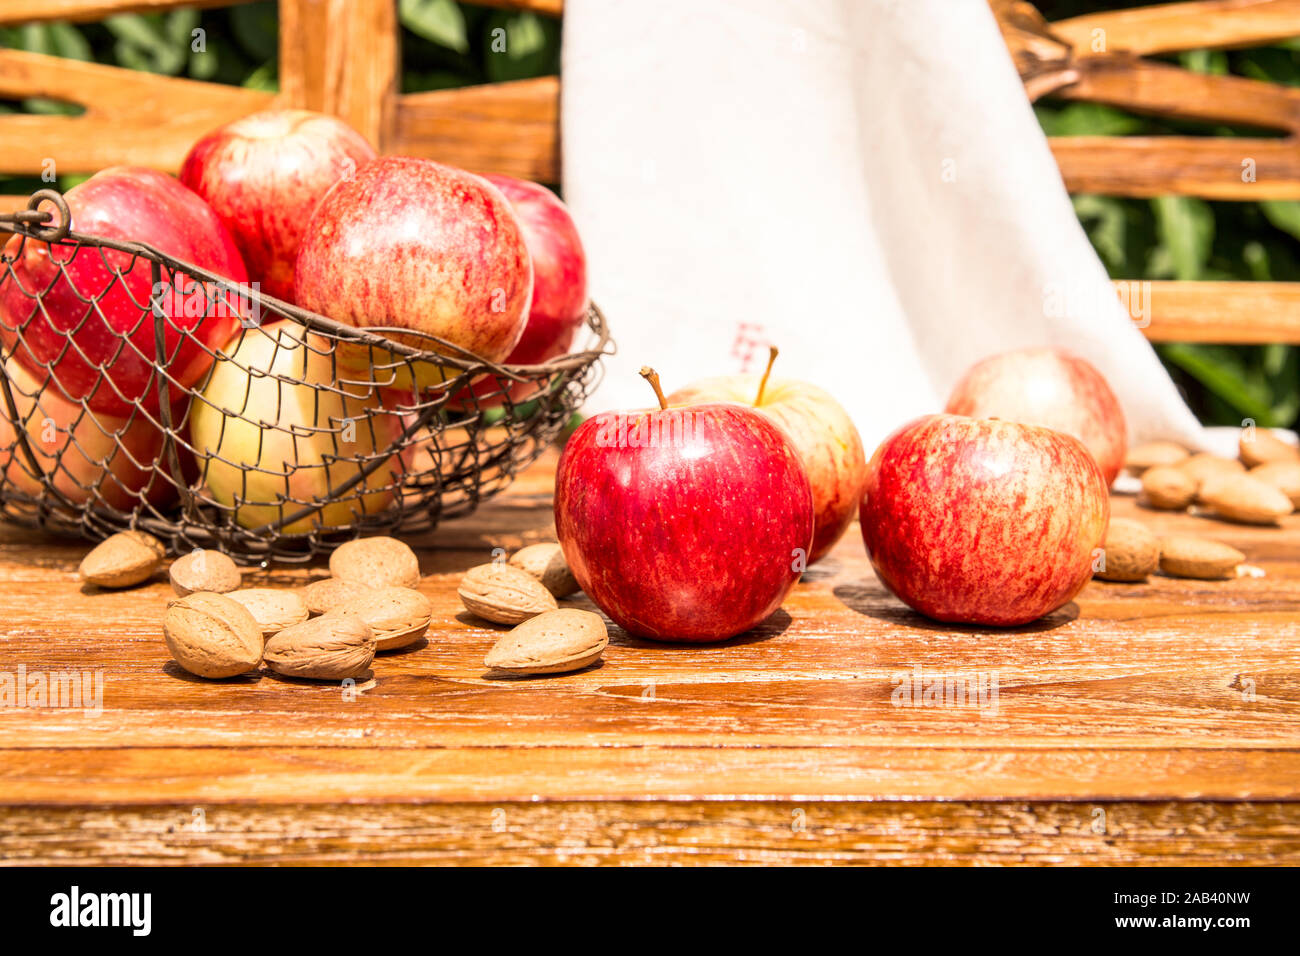 Äpfel und Mandeln liegen zusammen auf einer Holzbank im Garten |pommes et amandes couché ensemble sur un banc en bois dans le jardin| Banque D'Images